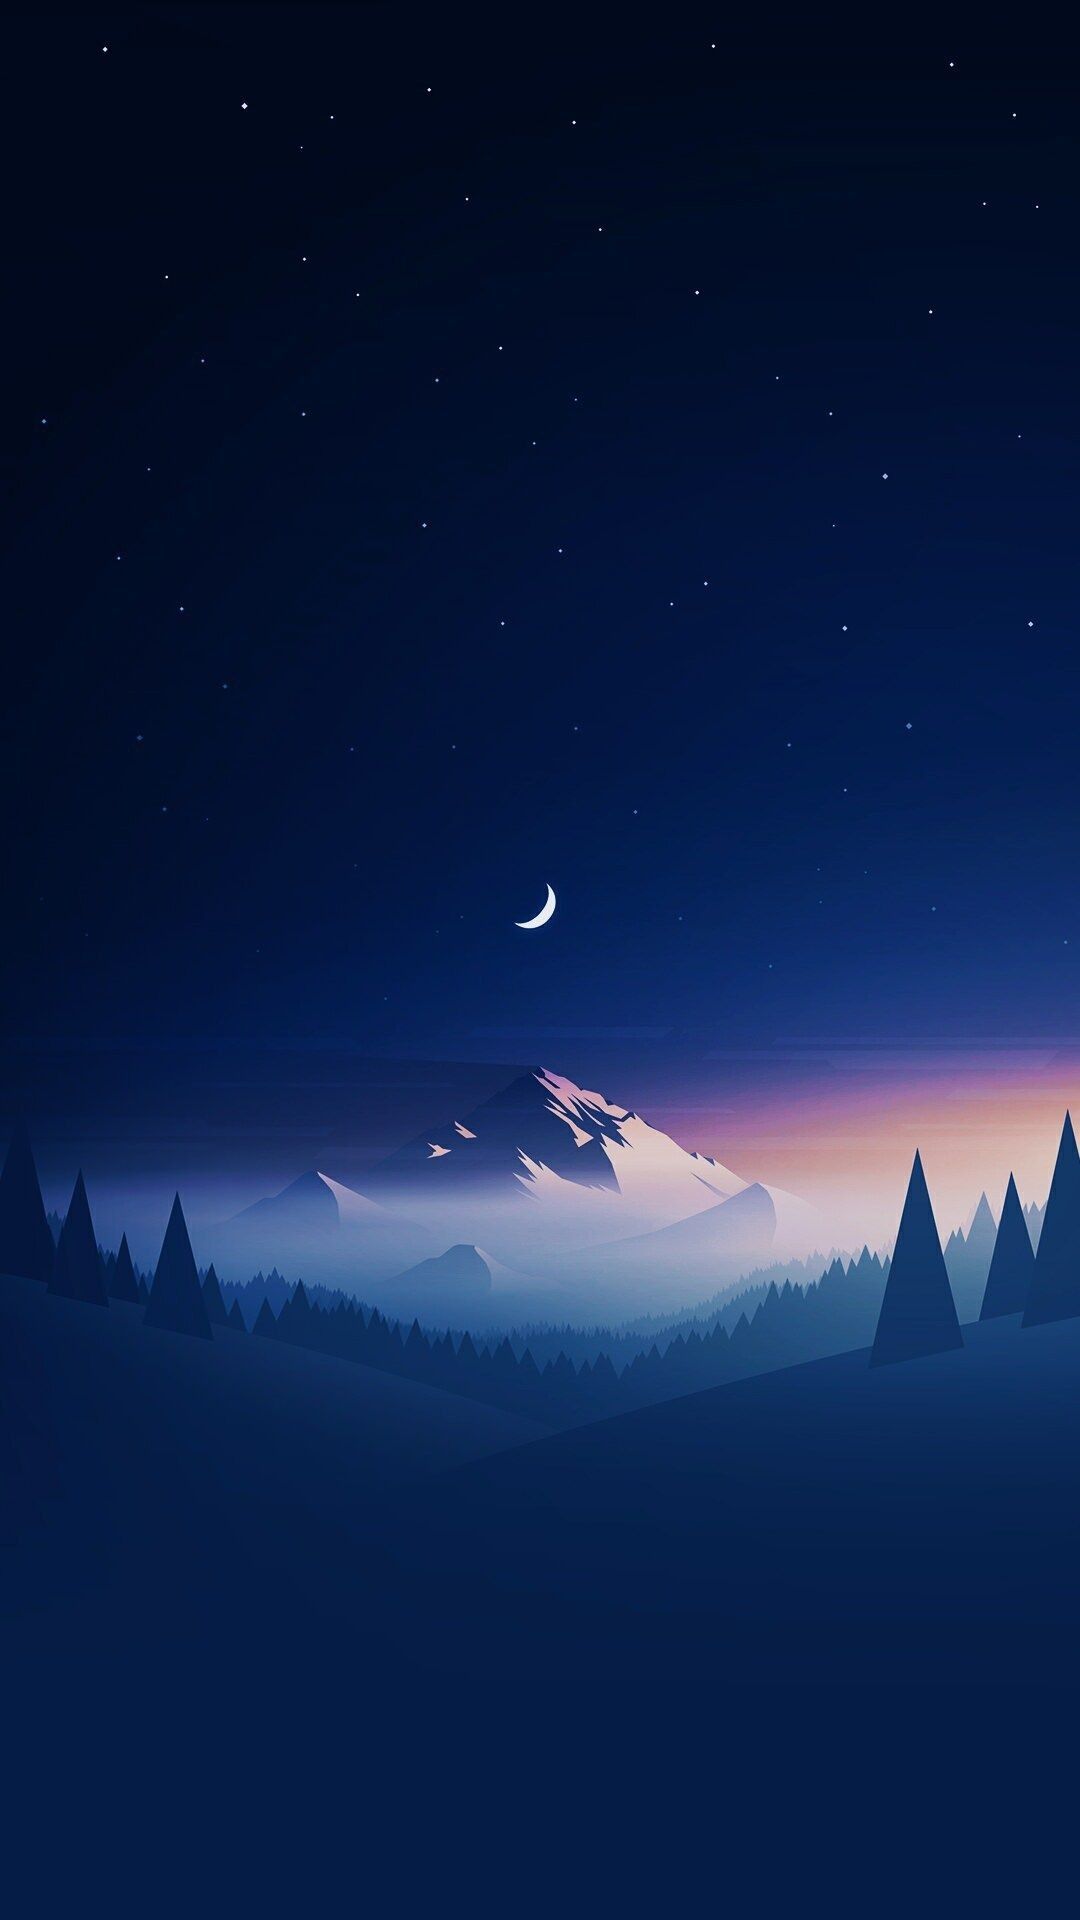 Night #mood #wallpaper #fantasy. Mkbhd wallpaper, Best iphone wallpaper, iPhone 7 plus wallpaper